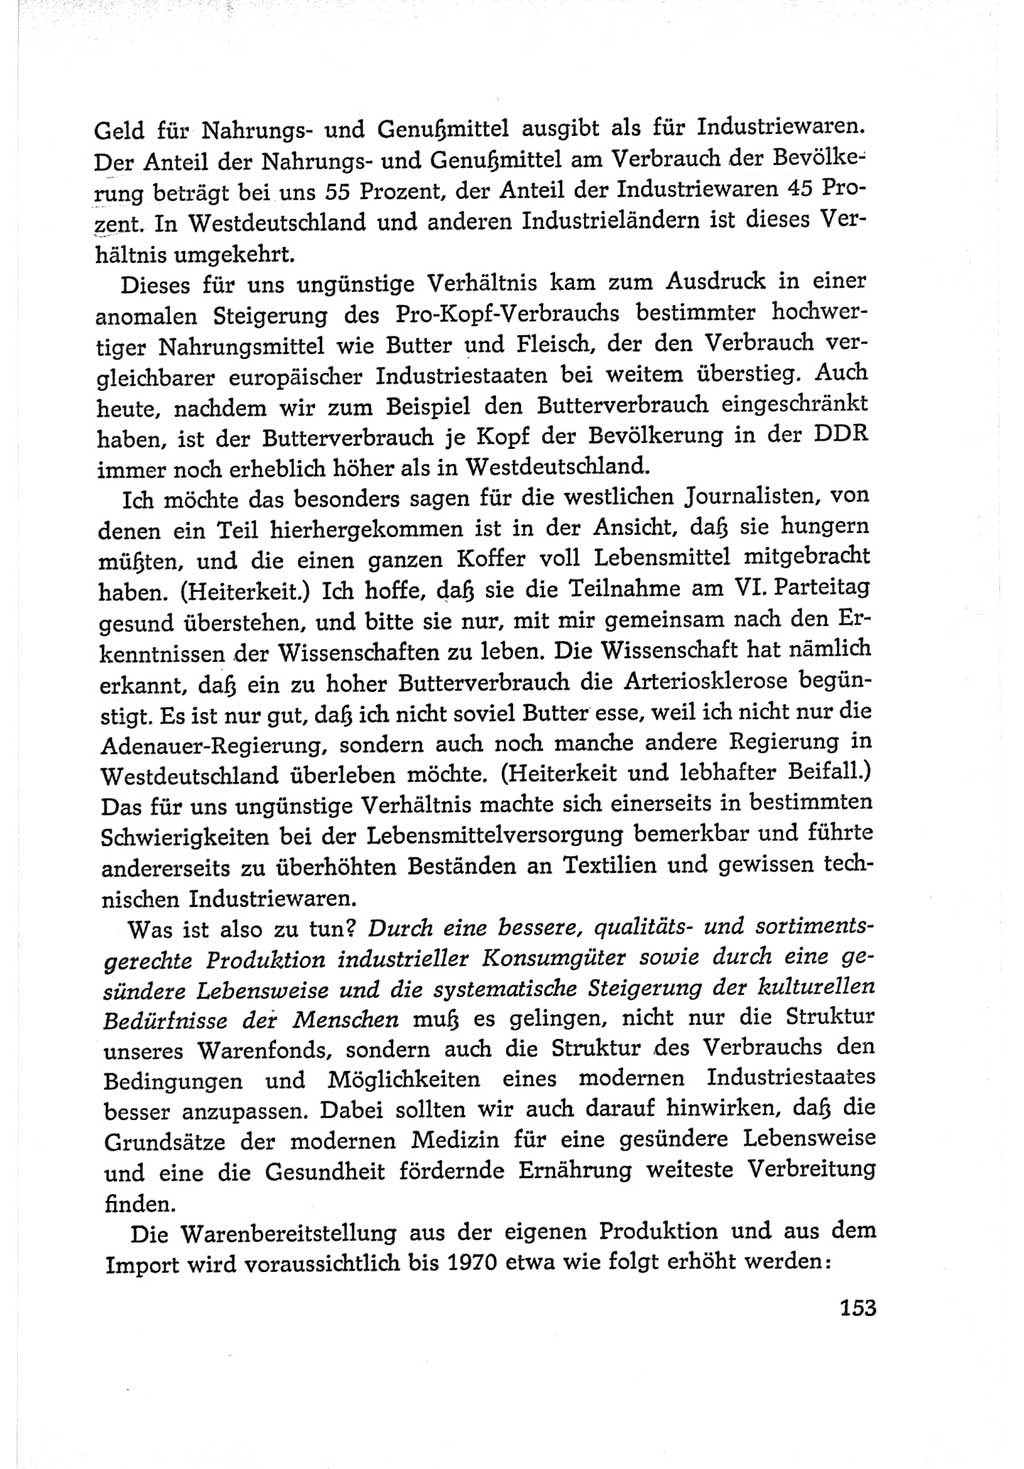 Protokoll der Verhandlungen des Ⅵ. Parteitages der Sozialistischen Einheitspartei Deutschlands (SED) [Deutsche Demokratische Republik (DDR)] 1963, Band Ⅰ, Seite 153 (Prot. Verh. Ⅵ. PT SED DDR 1963, Bd. Ⅰ, S. 153)